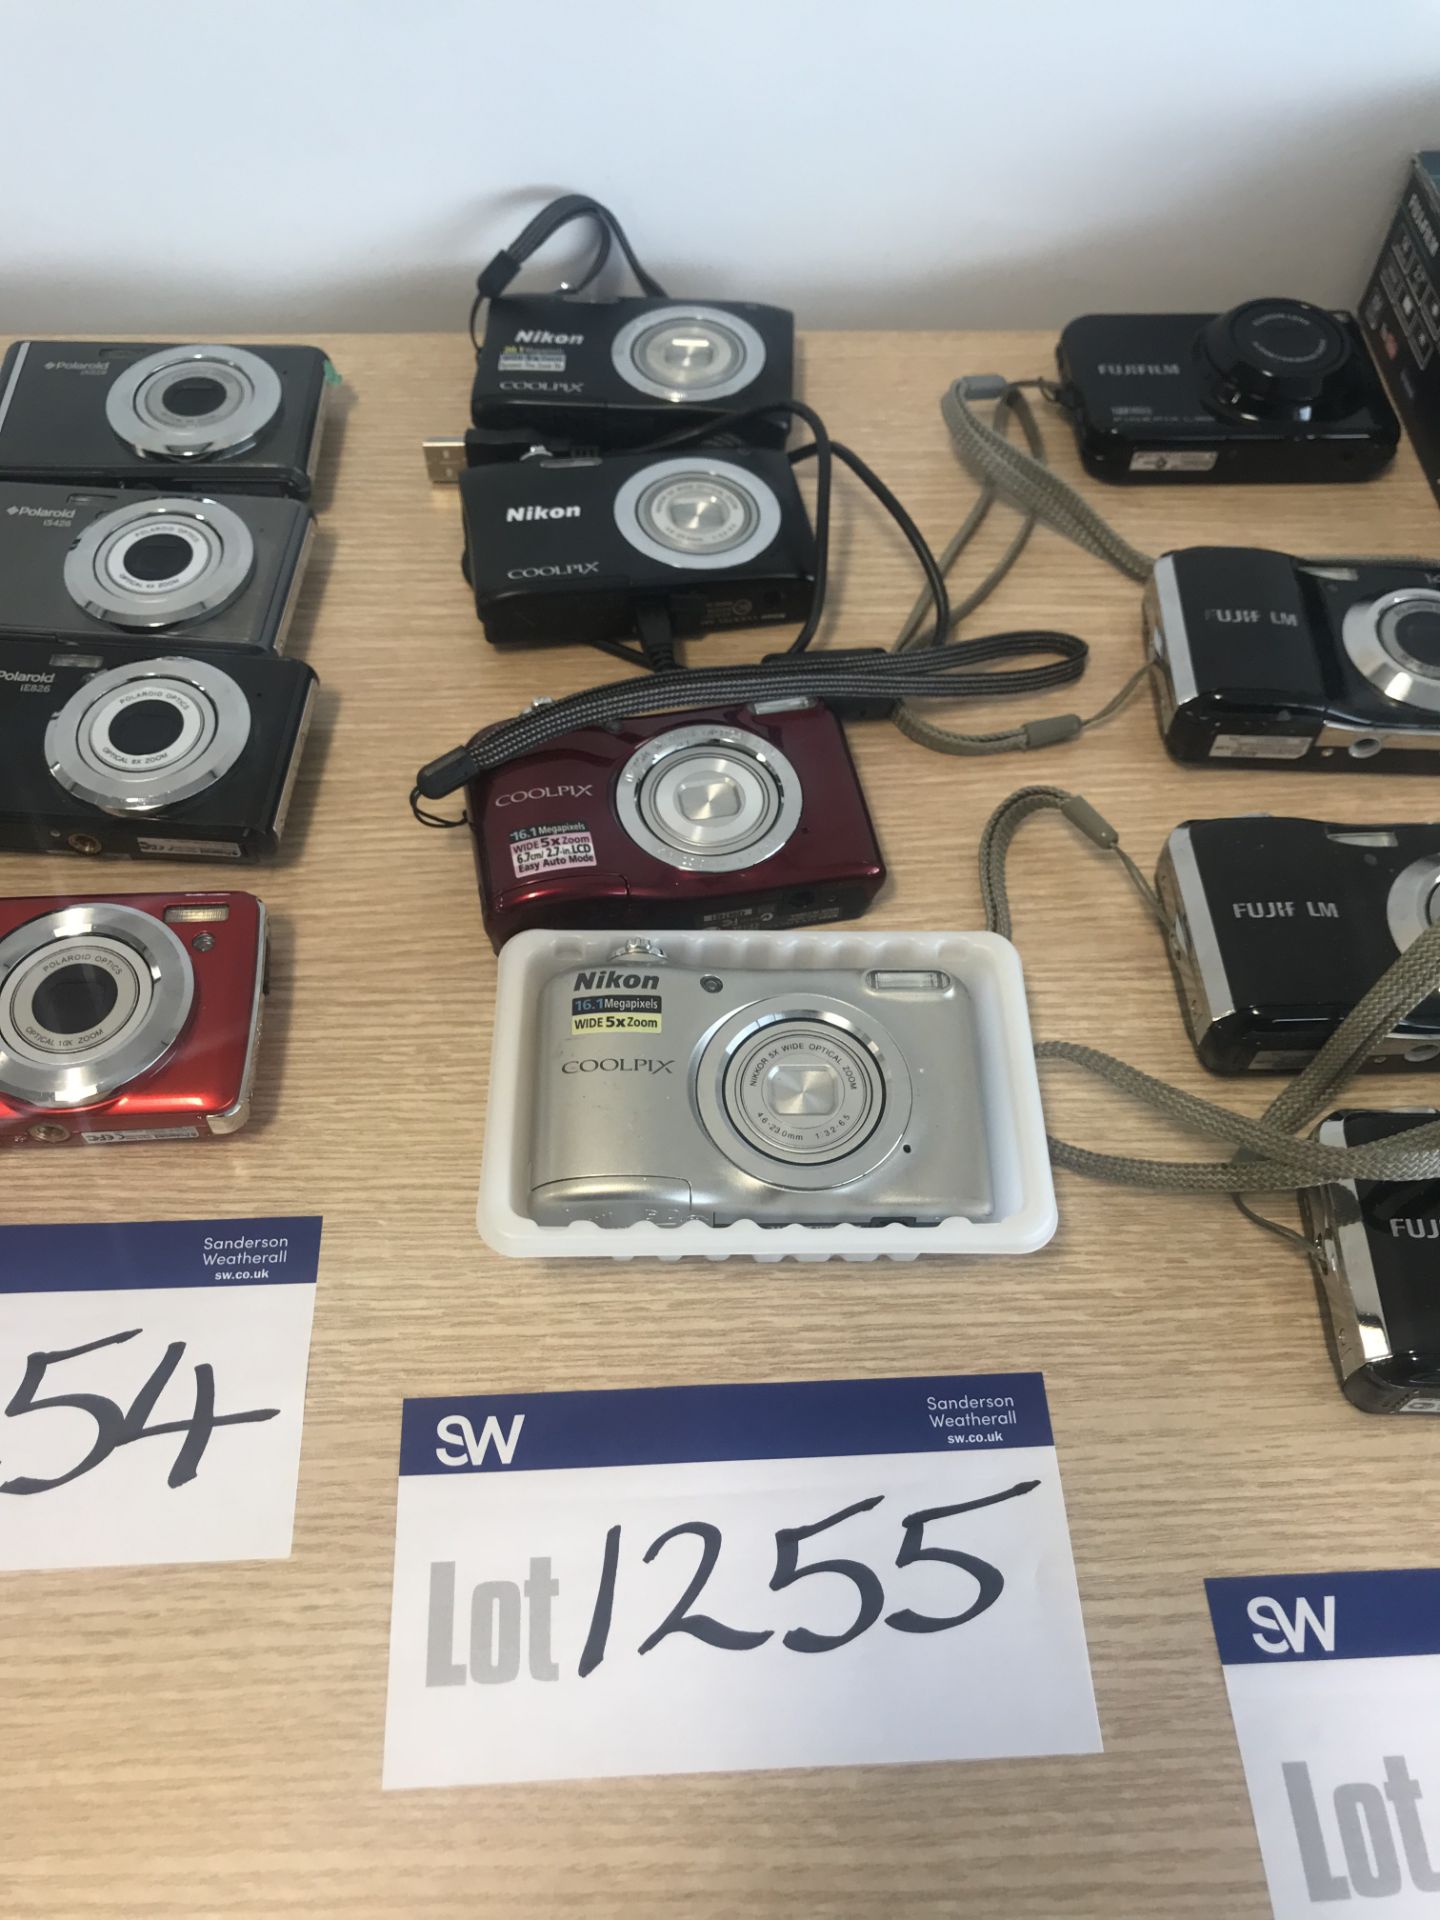 4 x Assorted Nixon Coolpixs Digital Cameras